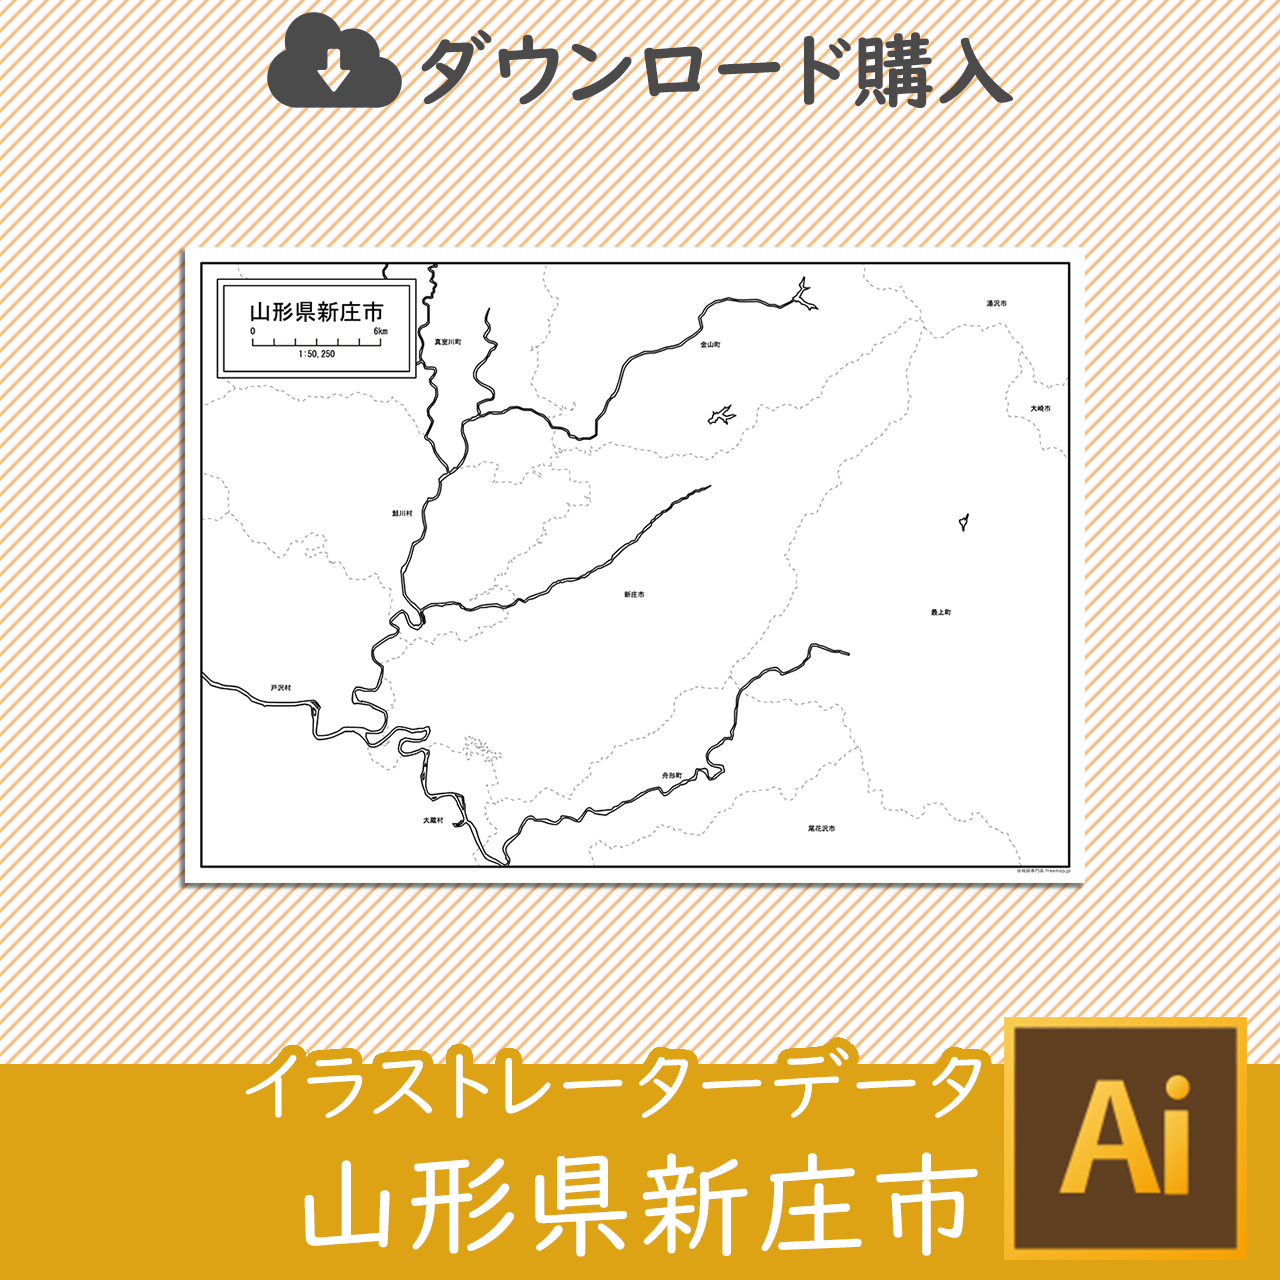 新庄市のaiデータのサムネイル画像